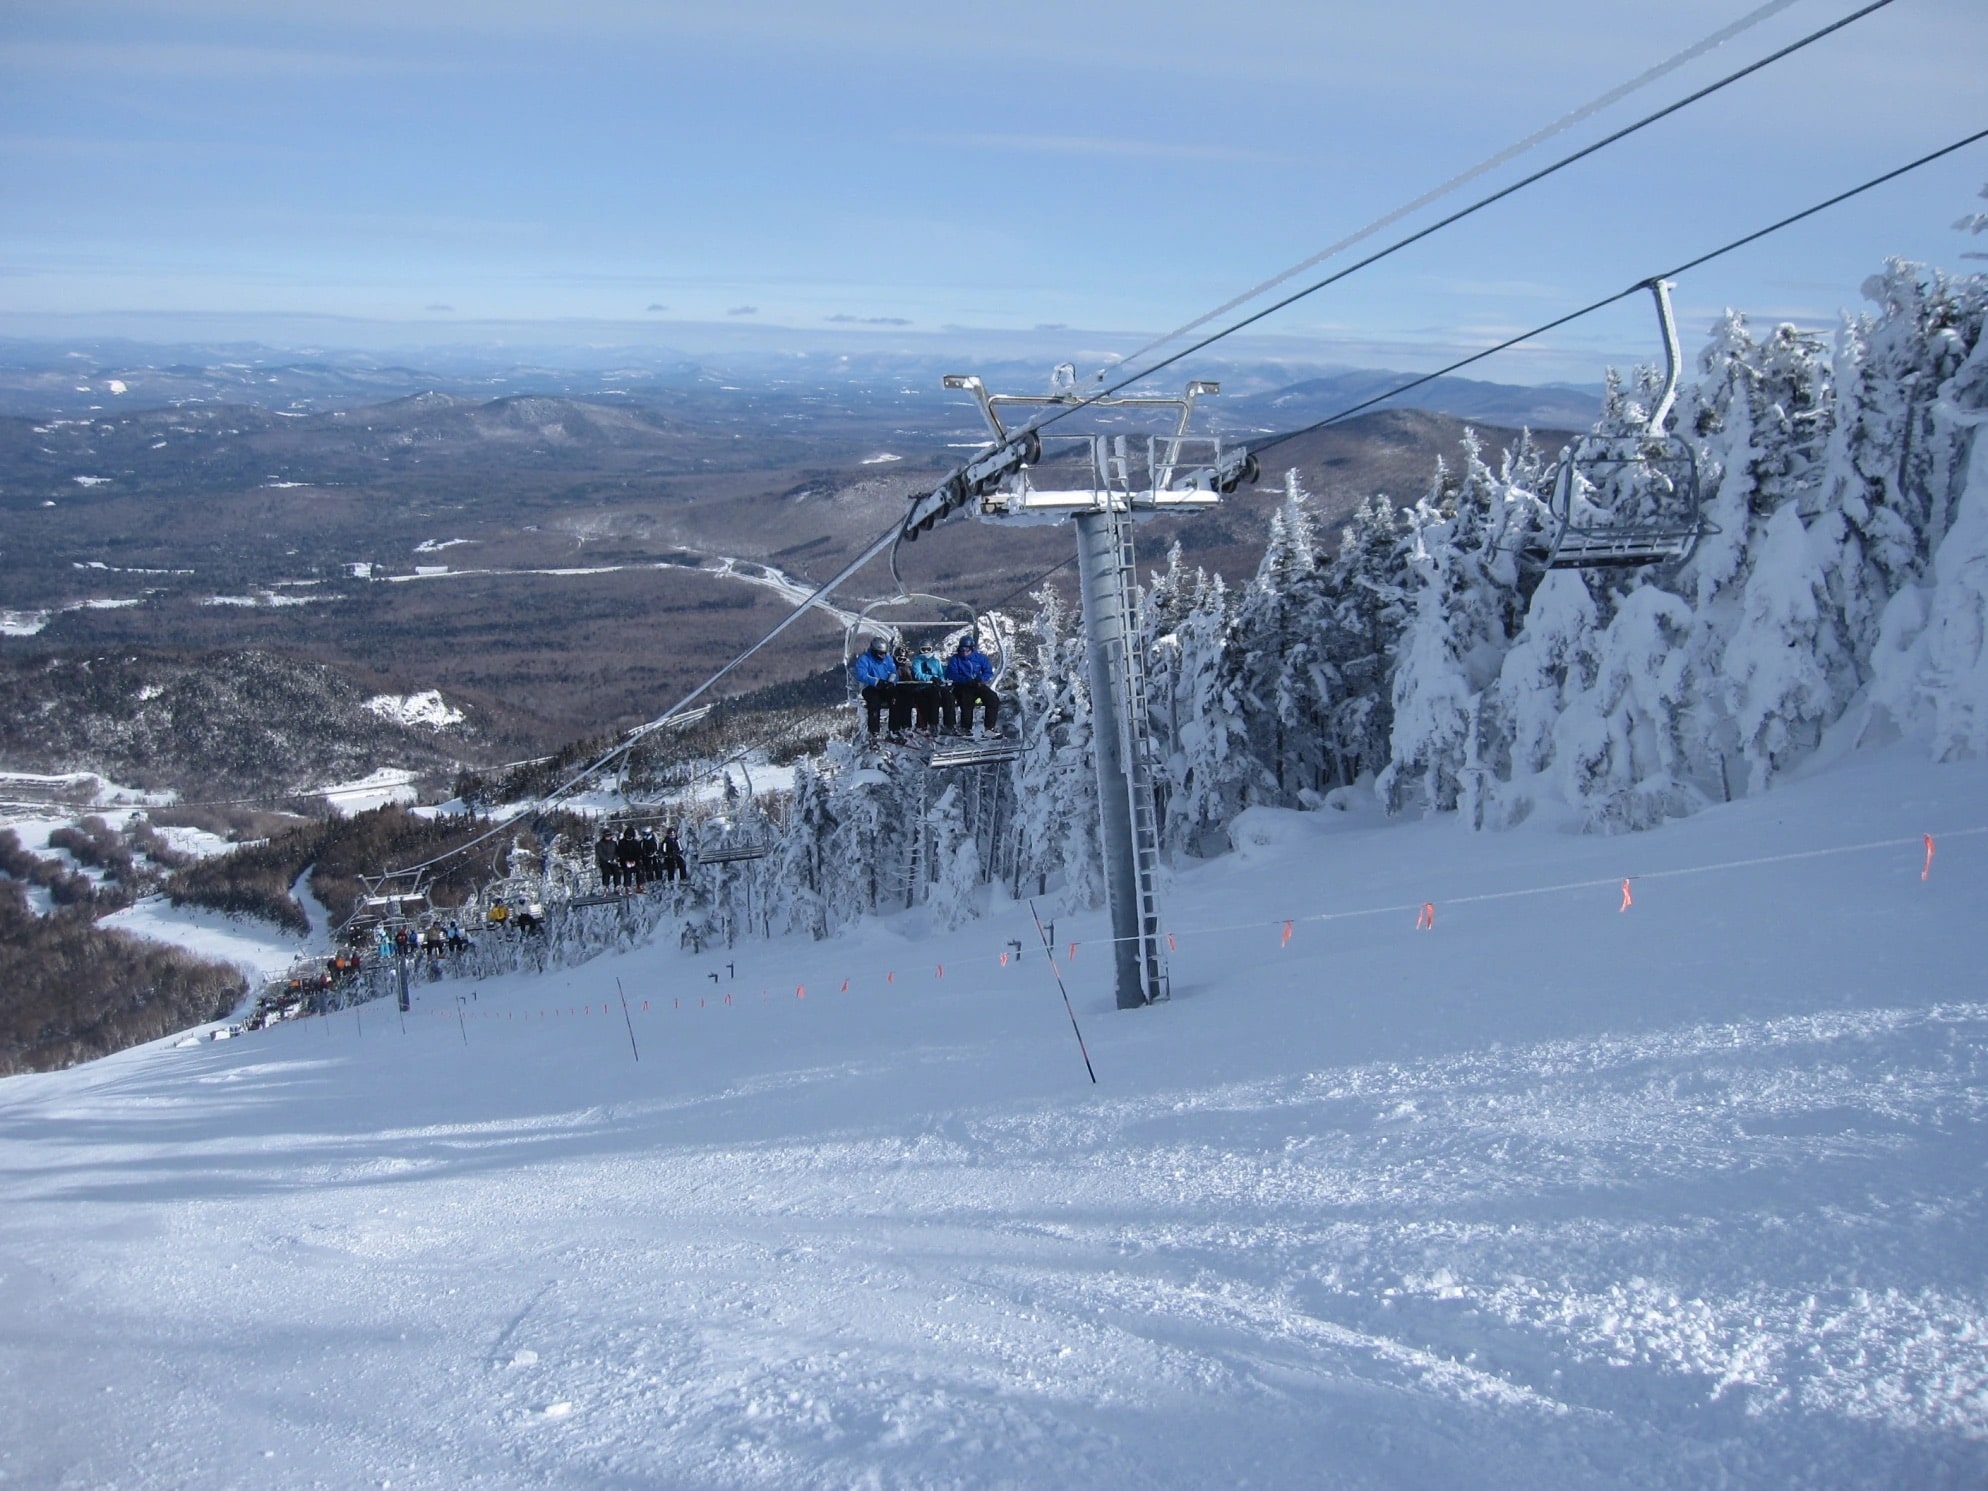 The Cold Lifts at Ski Resorts